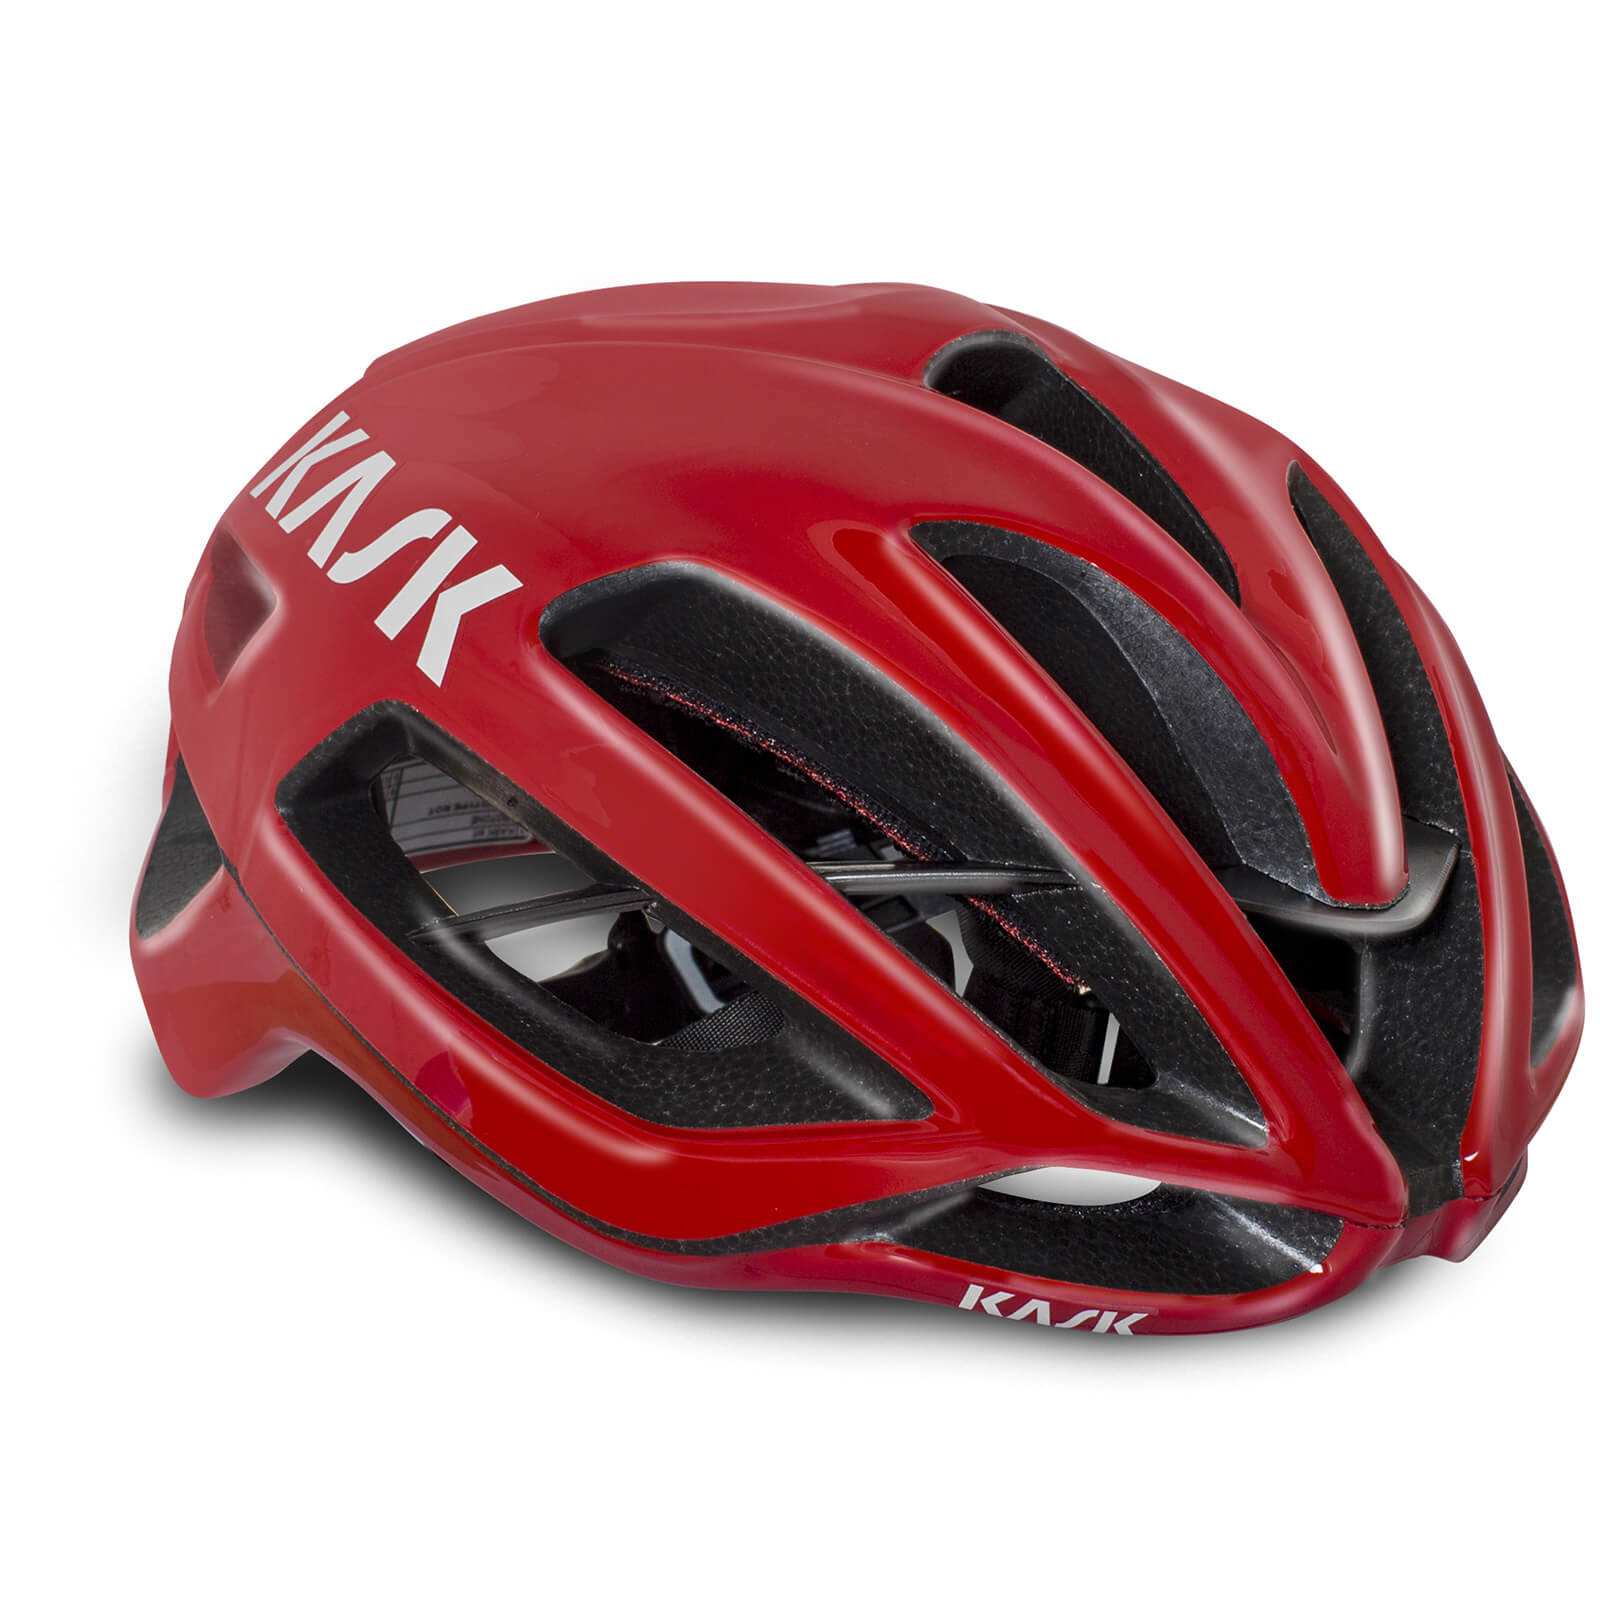 Kask Protone WG11 Road Helmet - S - Red